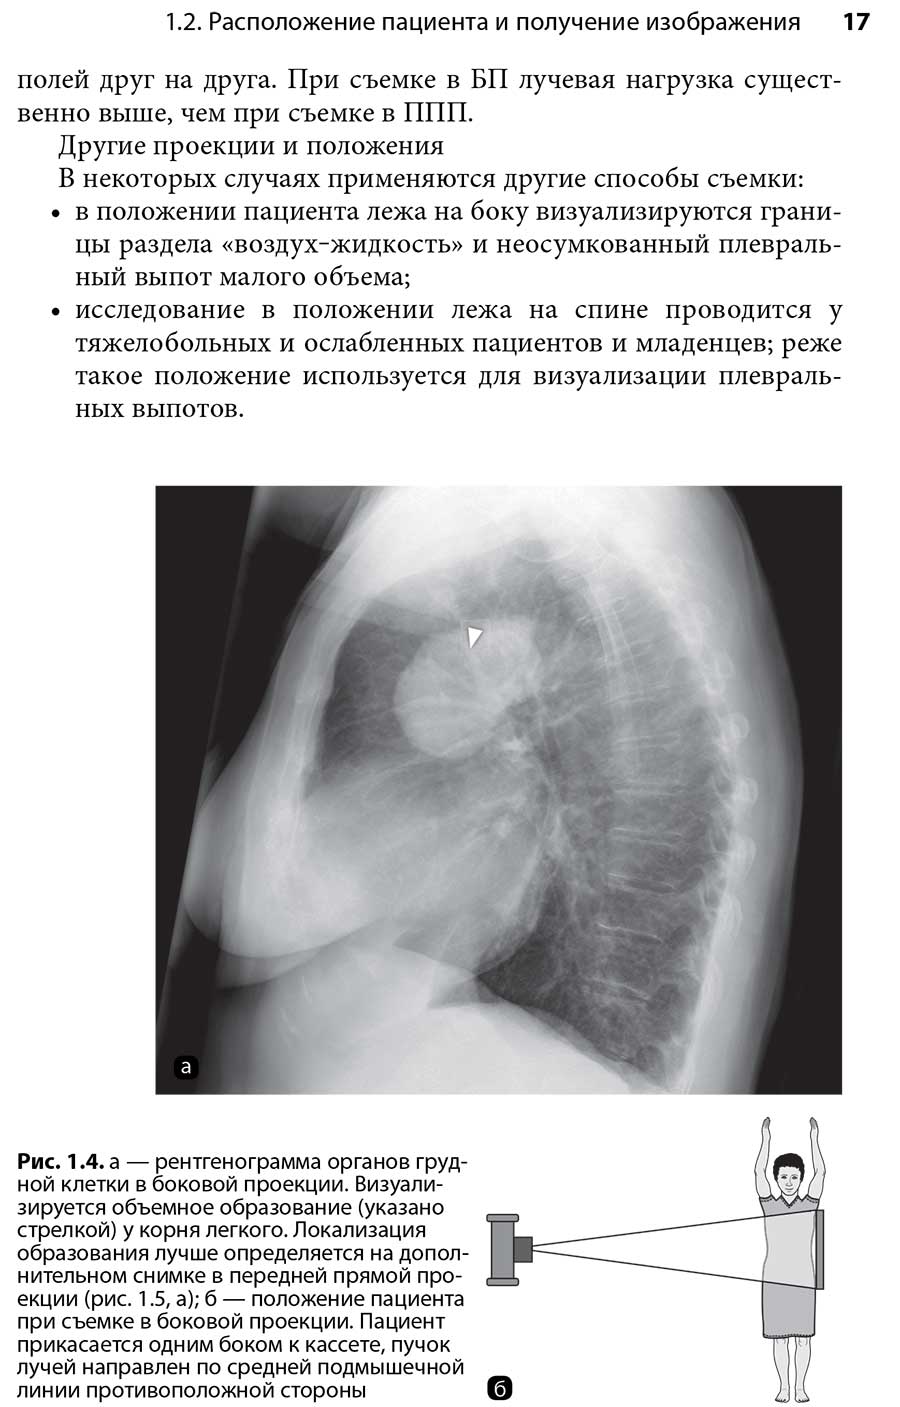 Рис. 1.4. а — рентгенограмма органов грудной клетки в боковой проекции. Визуализируется объемное образование (указано стрелкой) у корня легкого